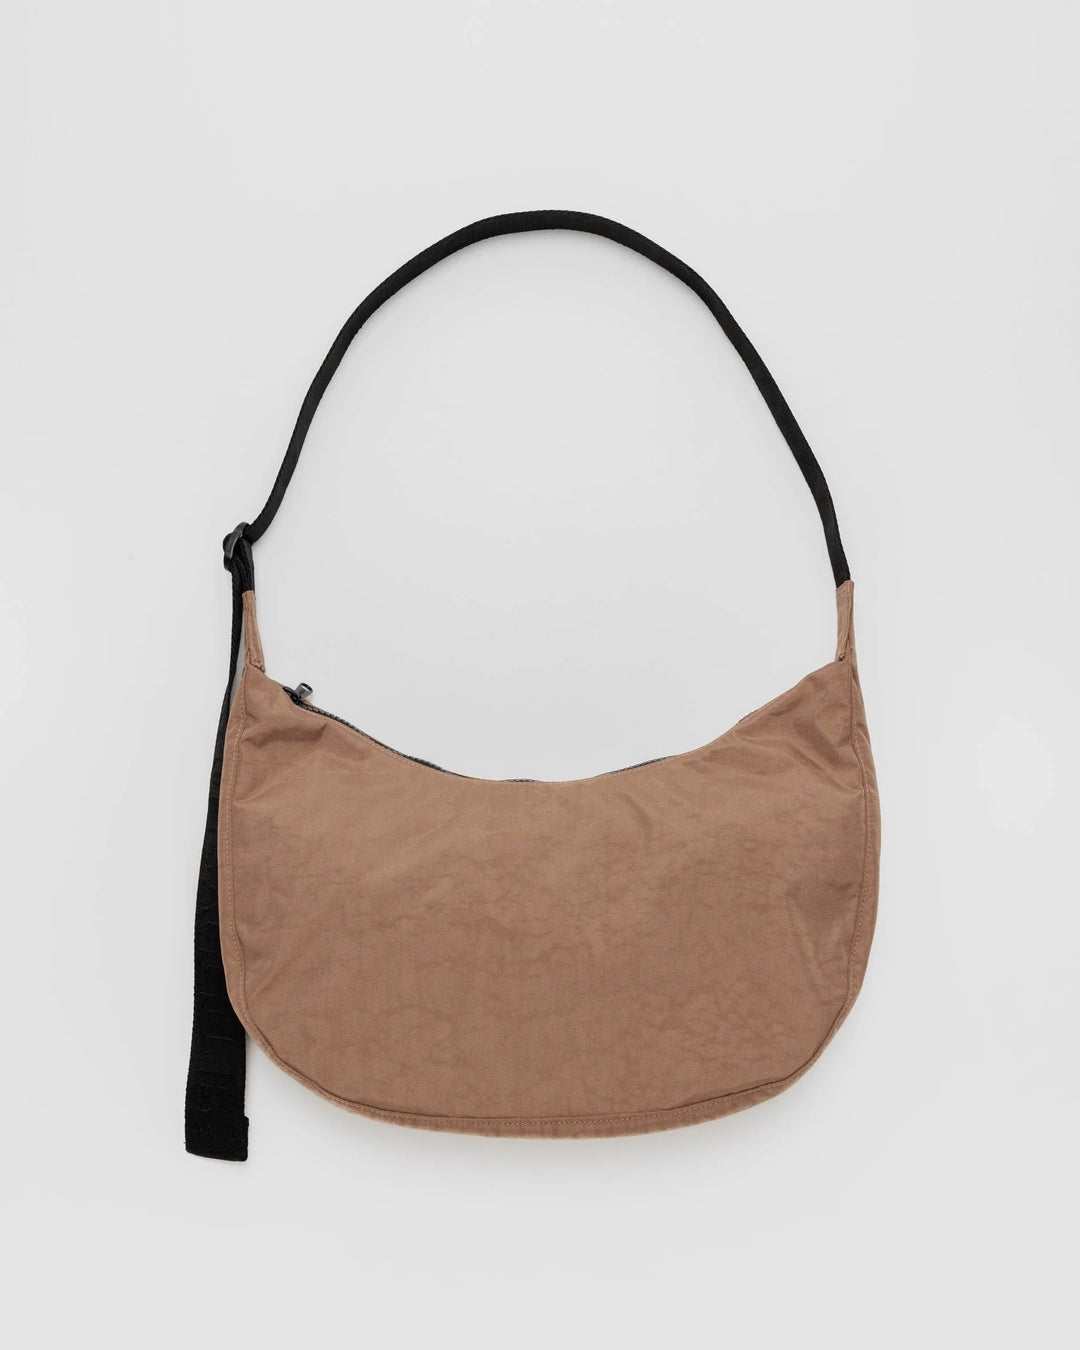 Baggu - Medium Nylon Crescent Bag - Cocoa